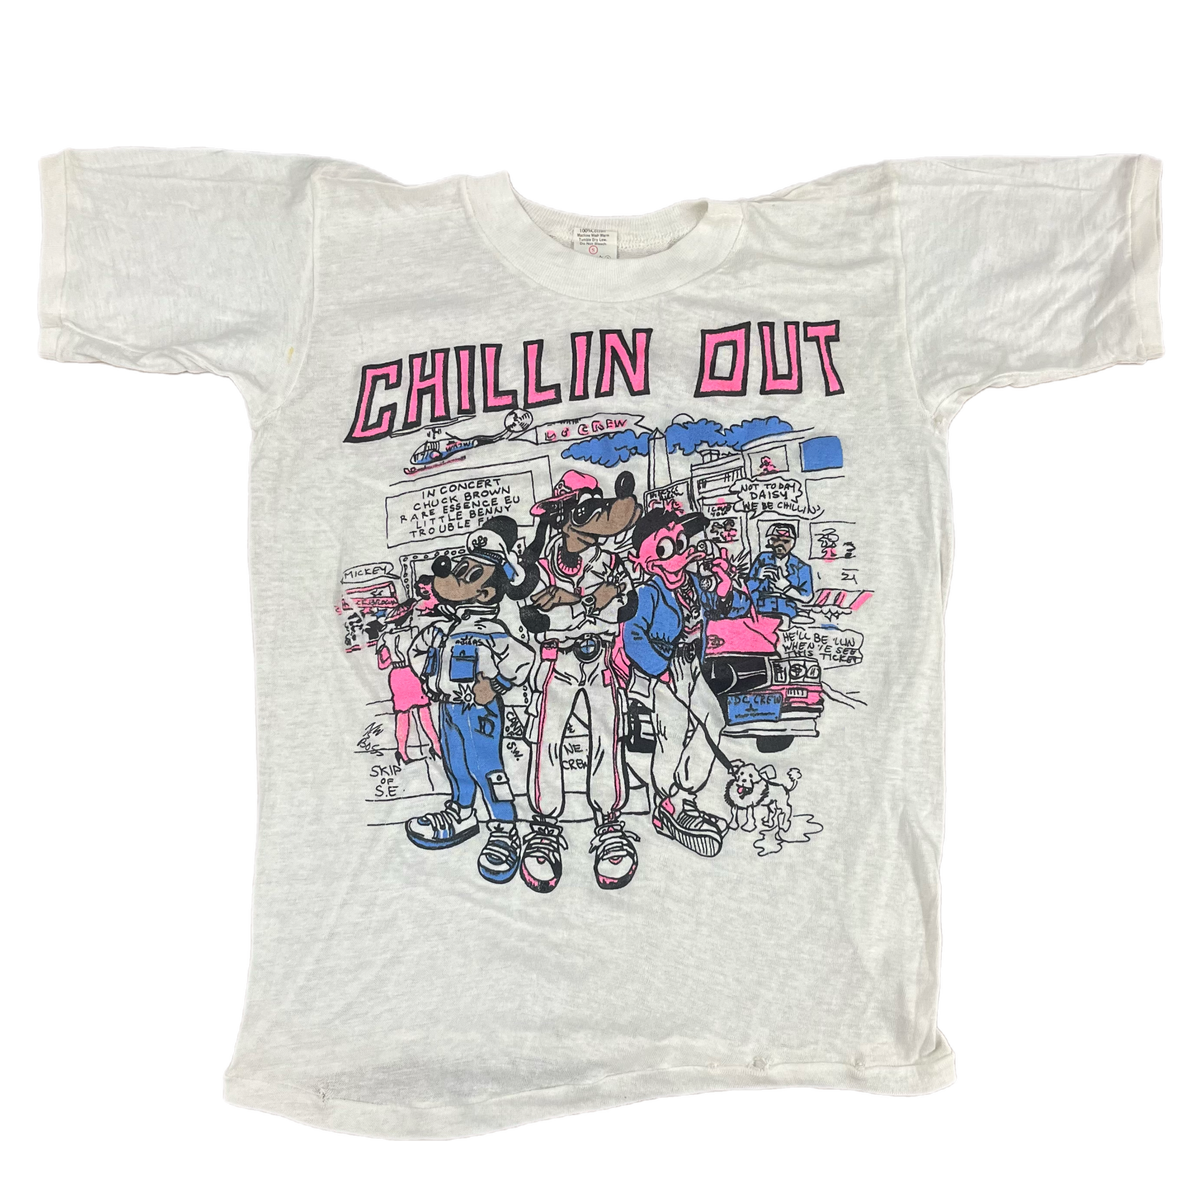 Vintage Washington, D.C. “Chillin’ Out” GOGO T-Shirt